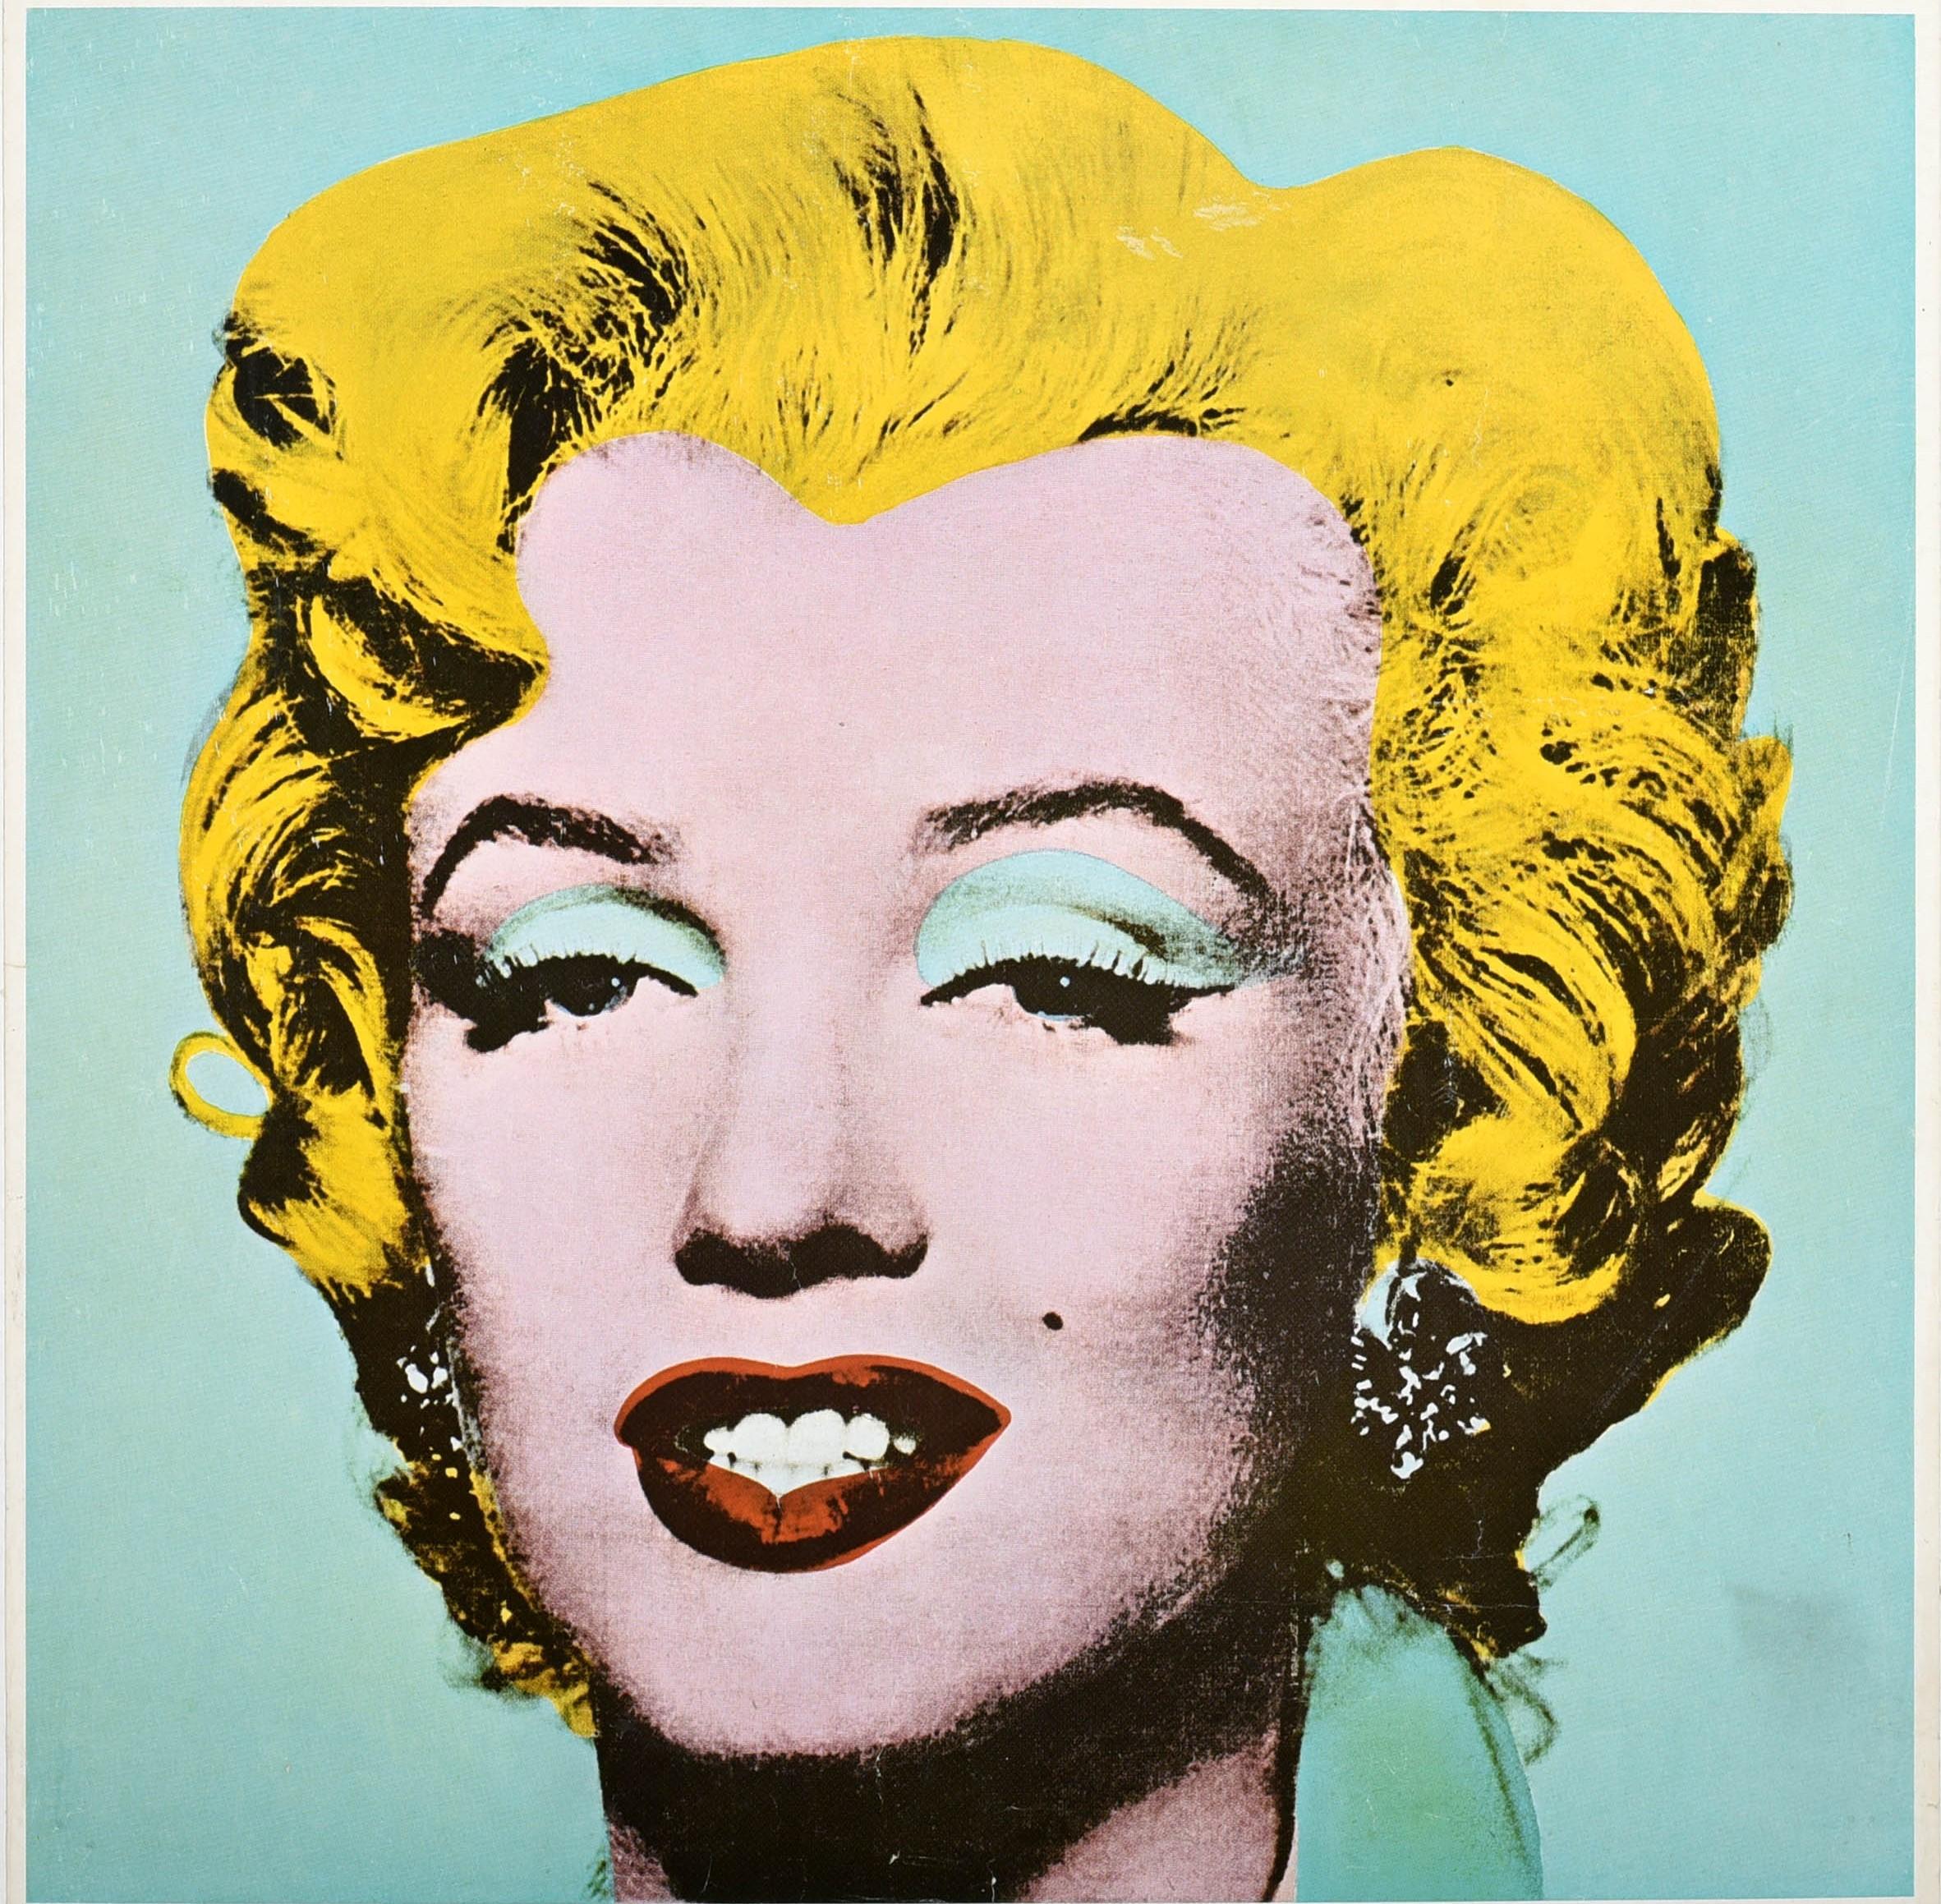 Marilyn Monroe Poster Plakat Pop Art Ausstellung Andy Warhol 2015 